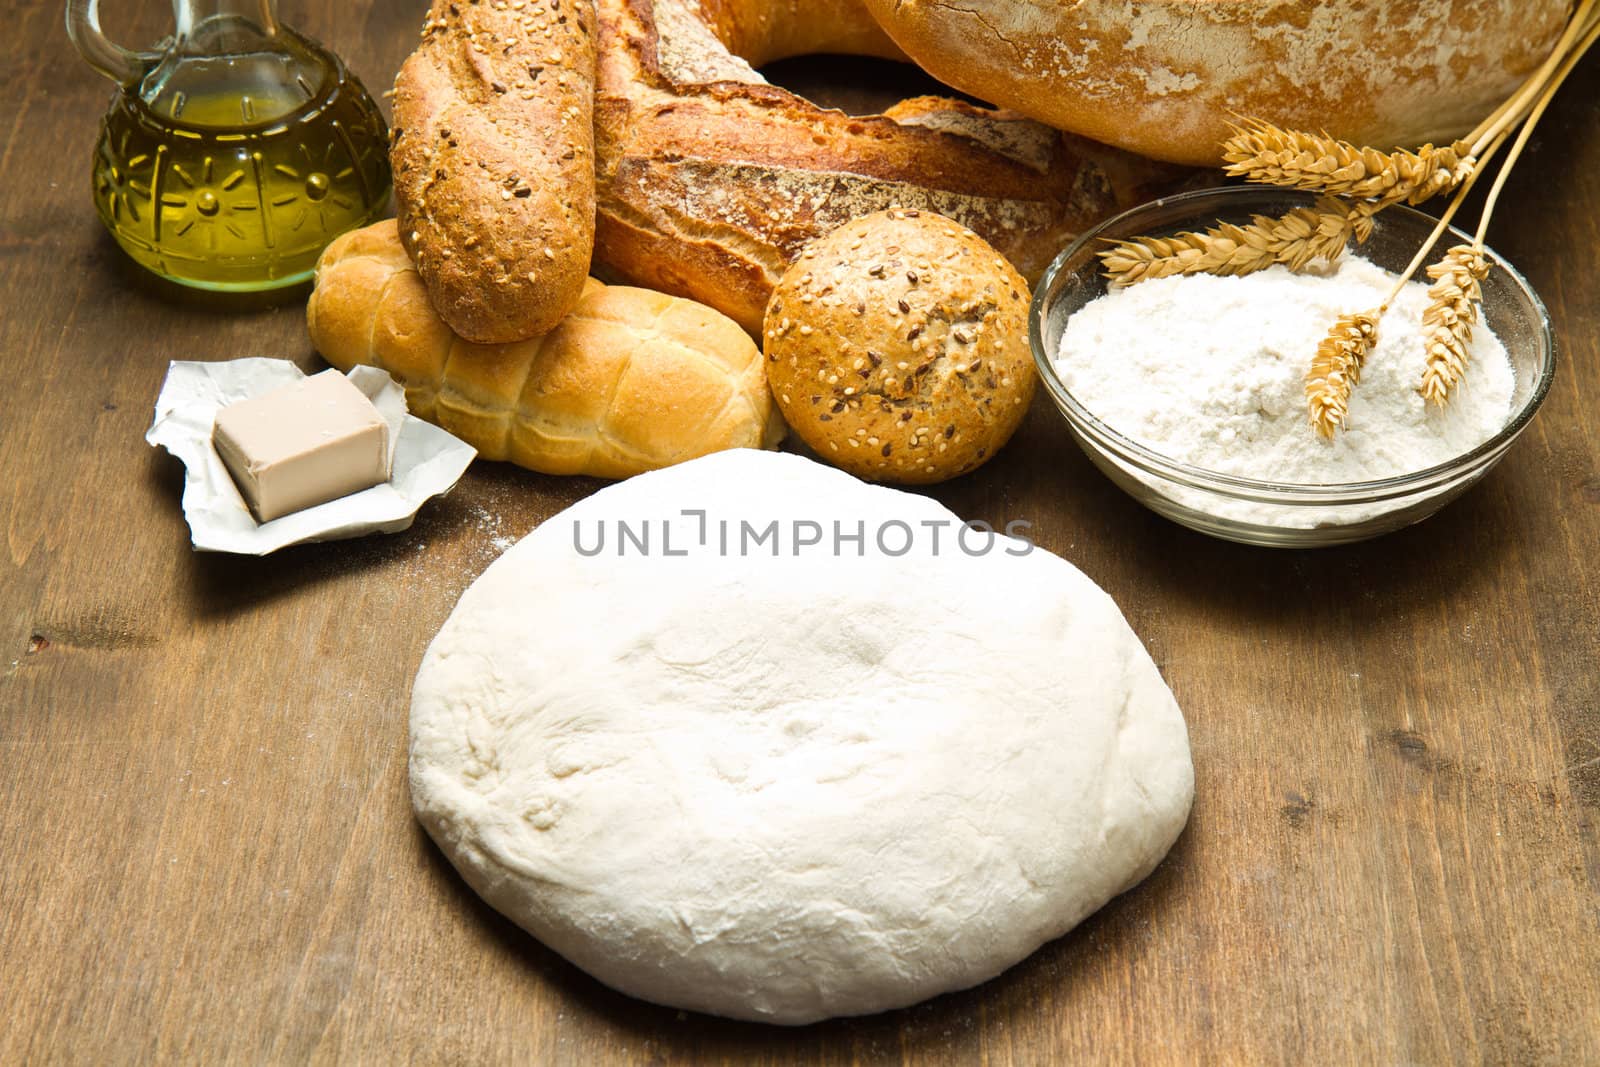  homemade bread  by lsantilli